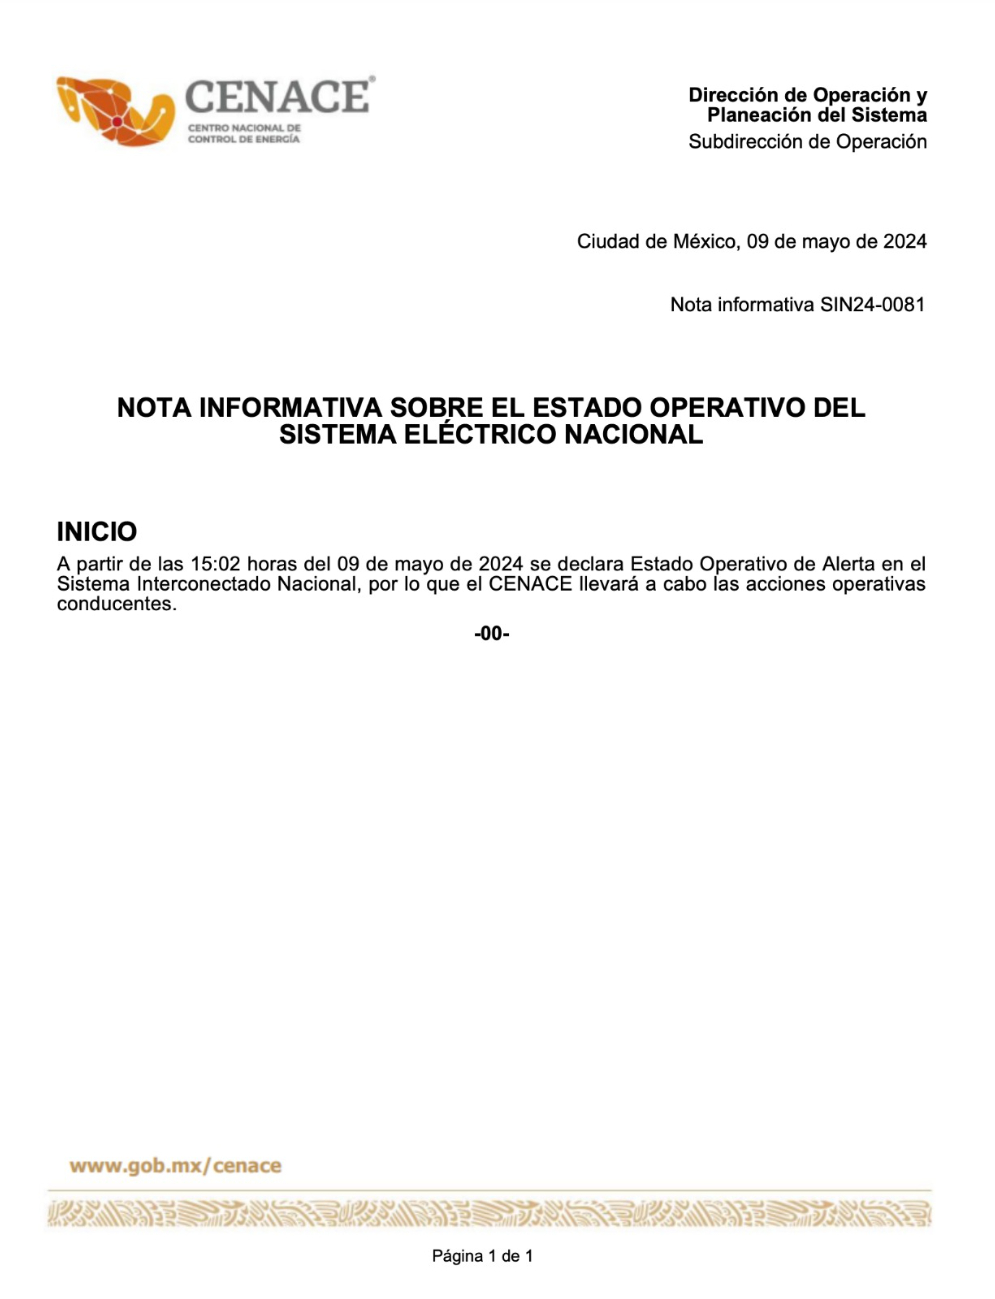 Comunicado de CENACE sobre el Estado Operativo de Alerta en México